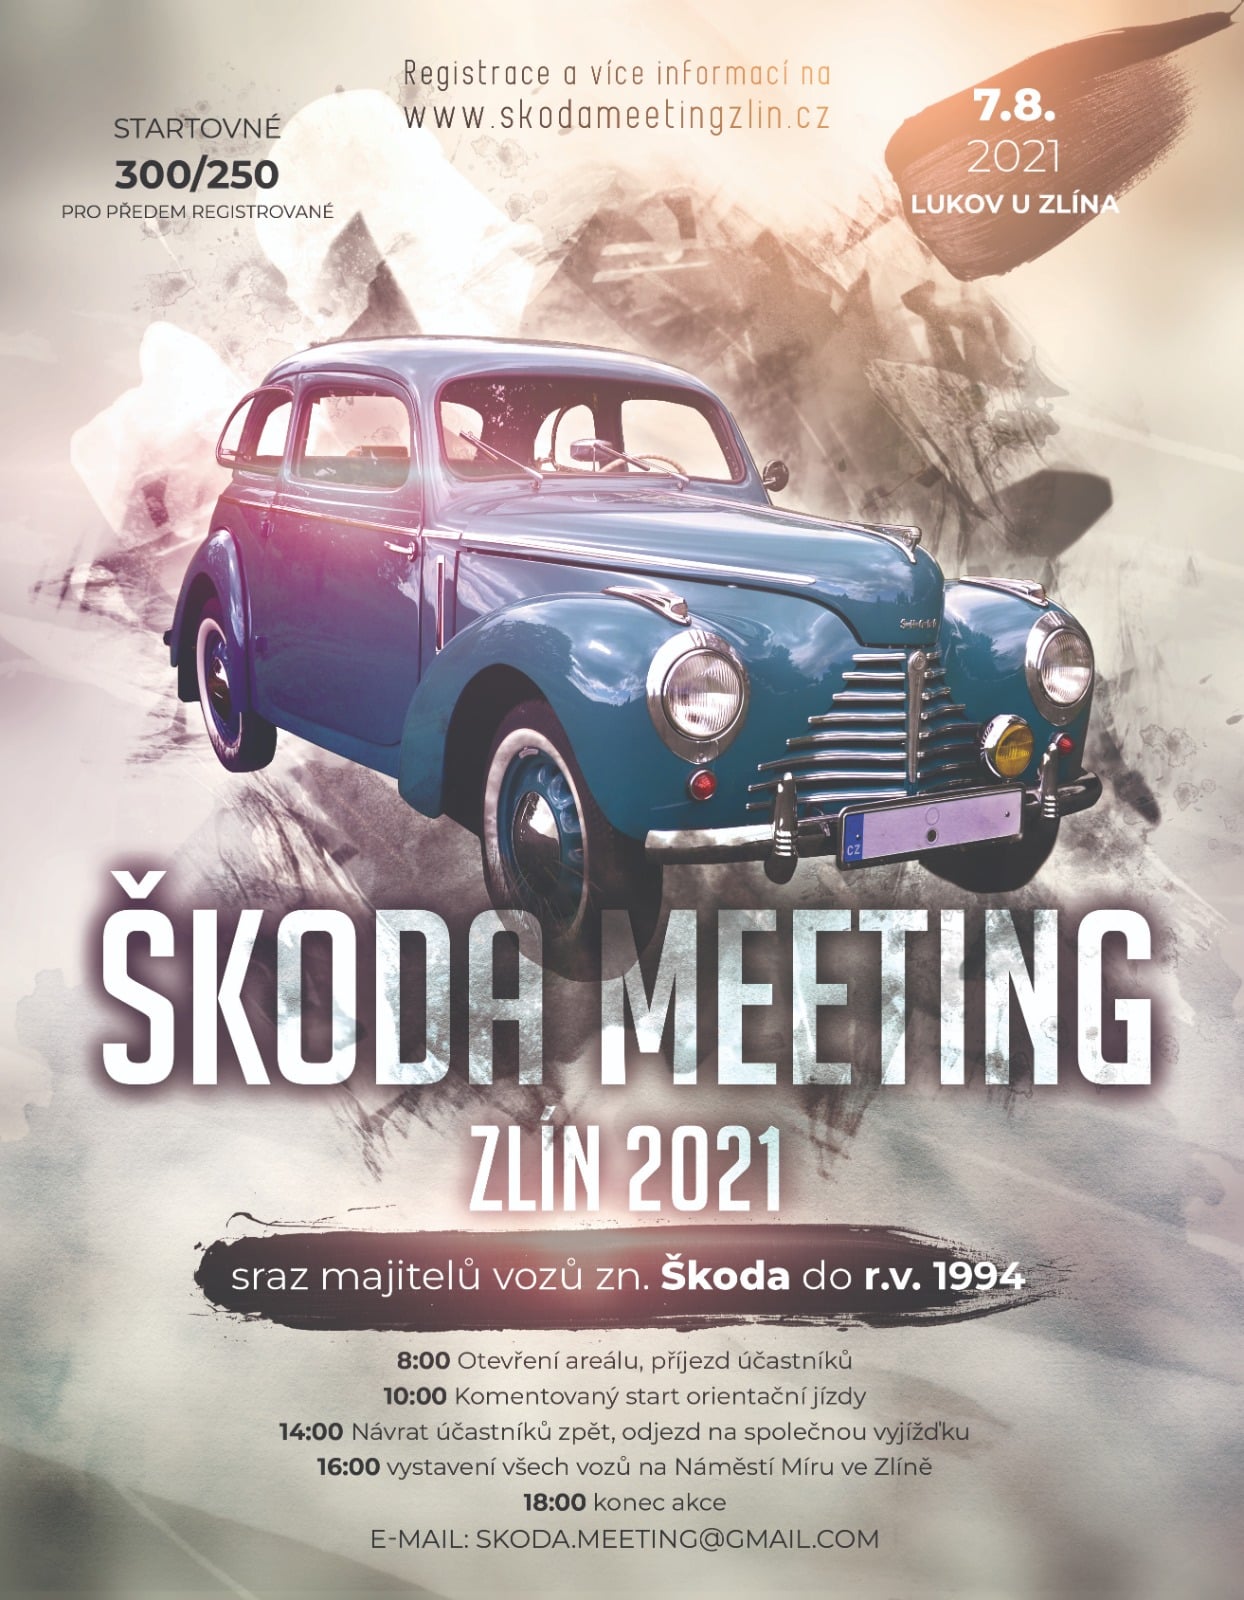 Škoda Meeting Zlín 2021